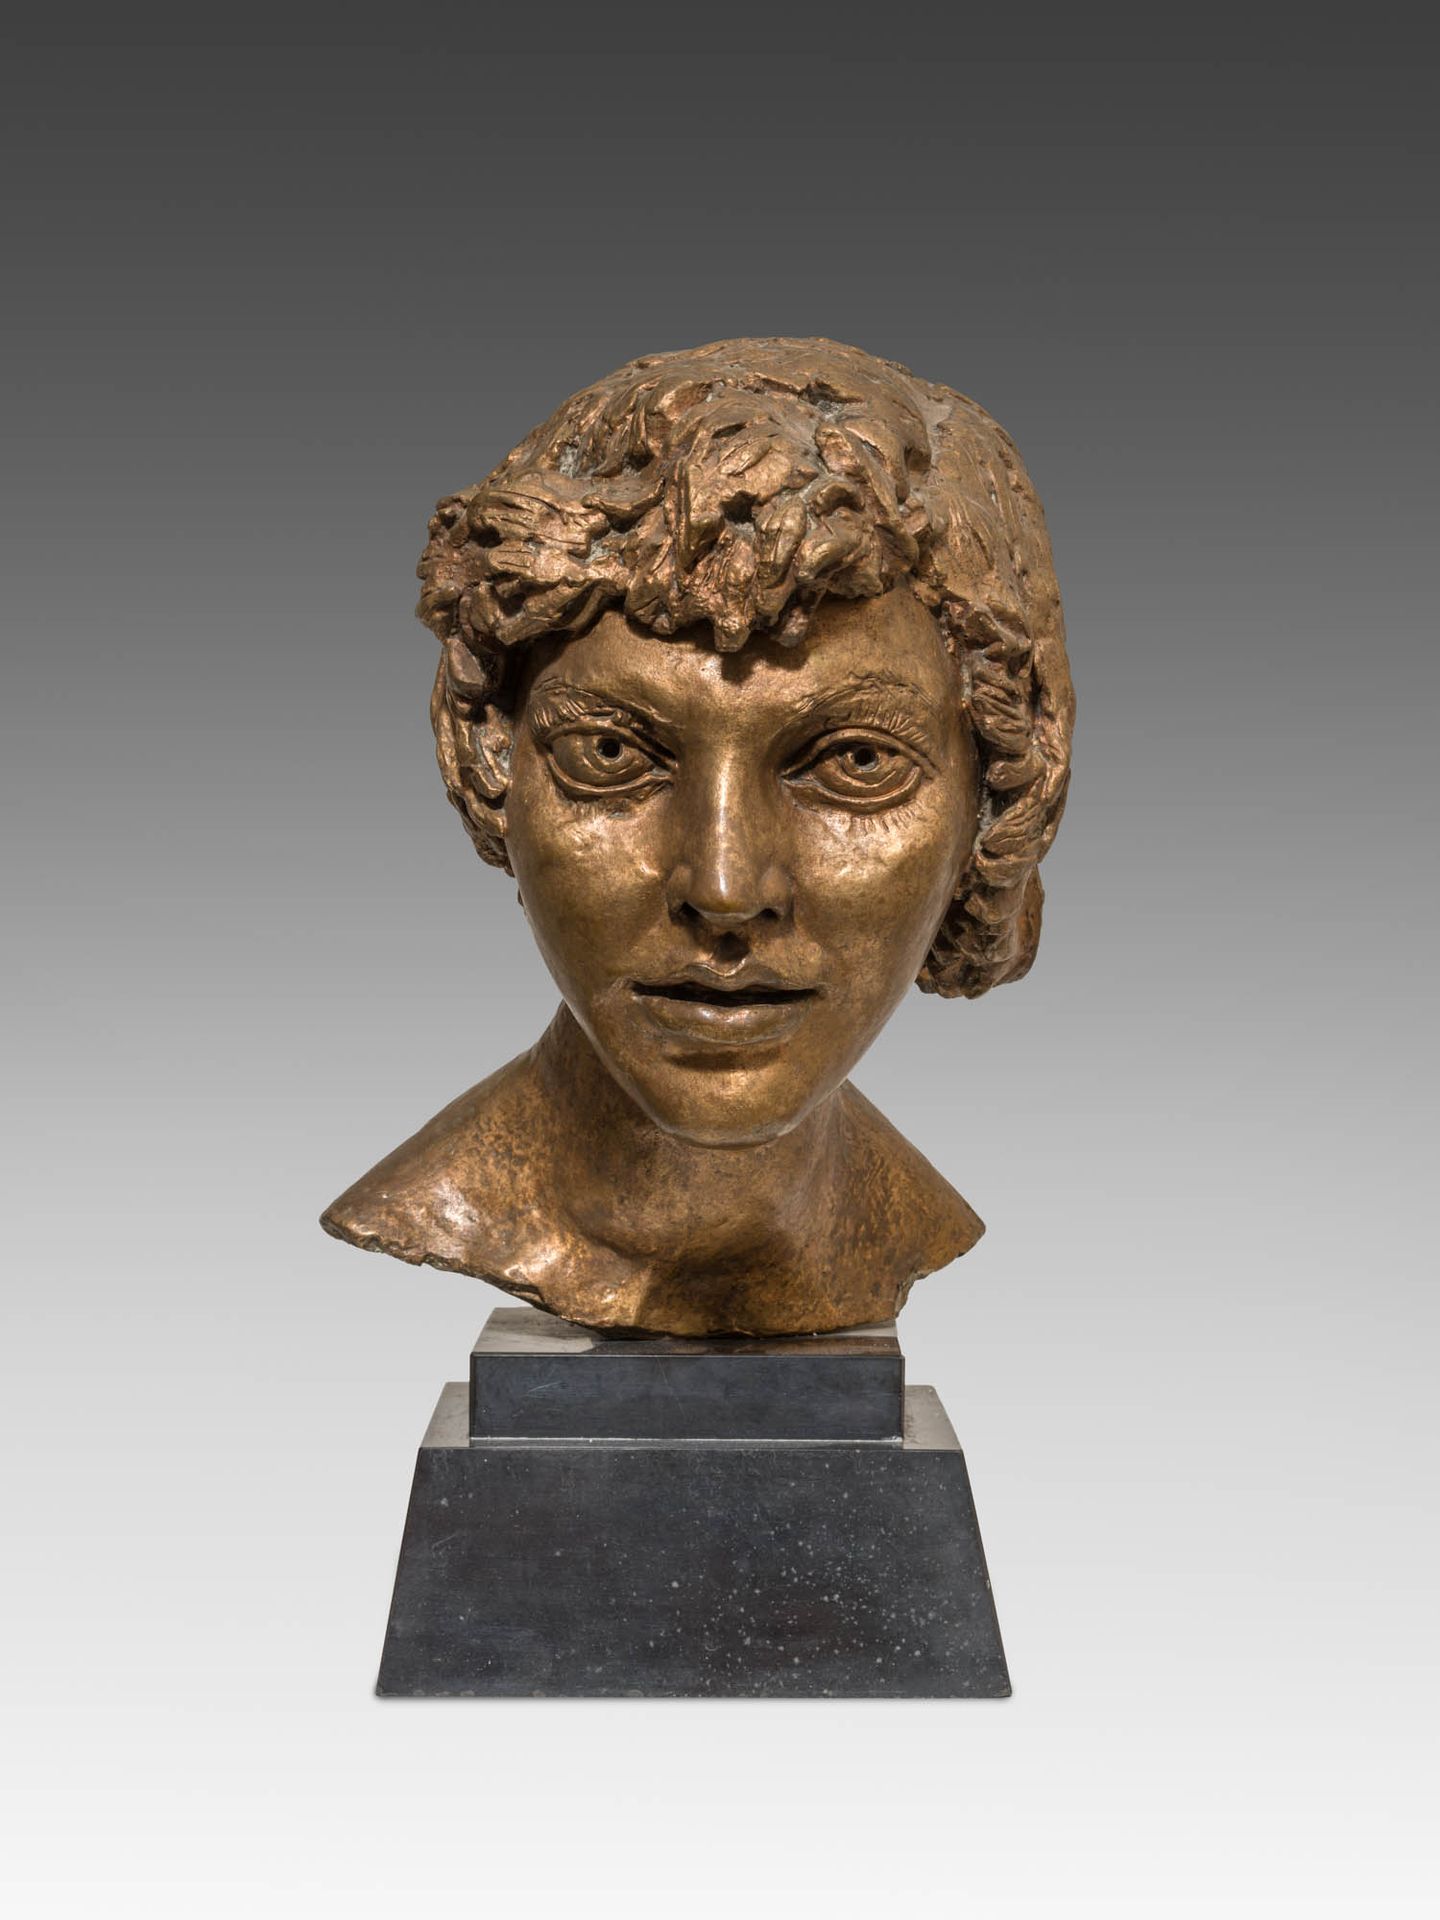 Jacob Epstein 1880–1959 
Jacob Epstein 1880-1959

凯蒂的画像

铜质

肩上签名的爱泼斯坦

高42.5厘米